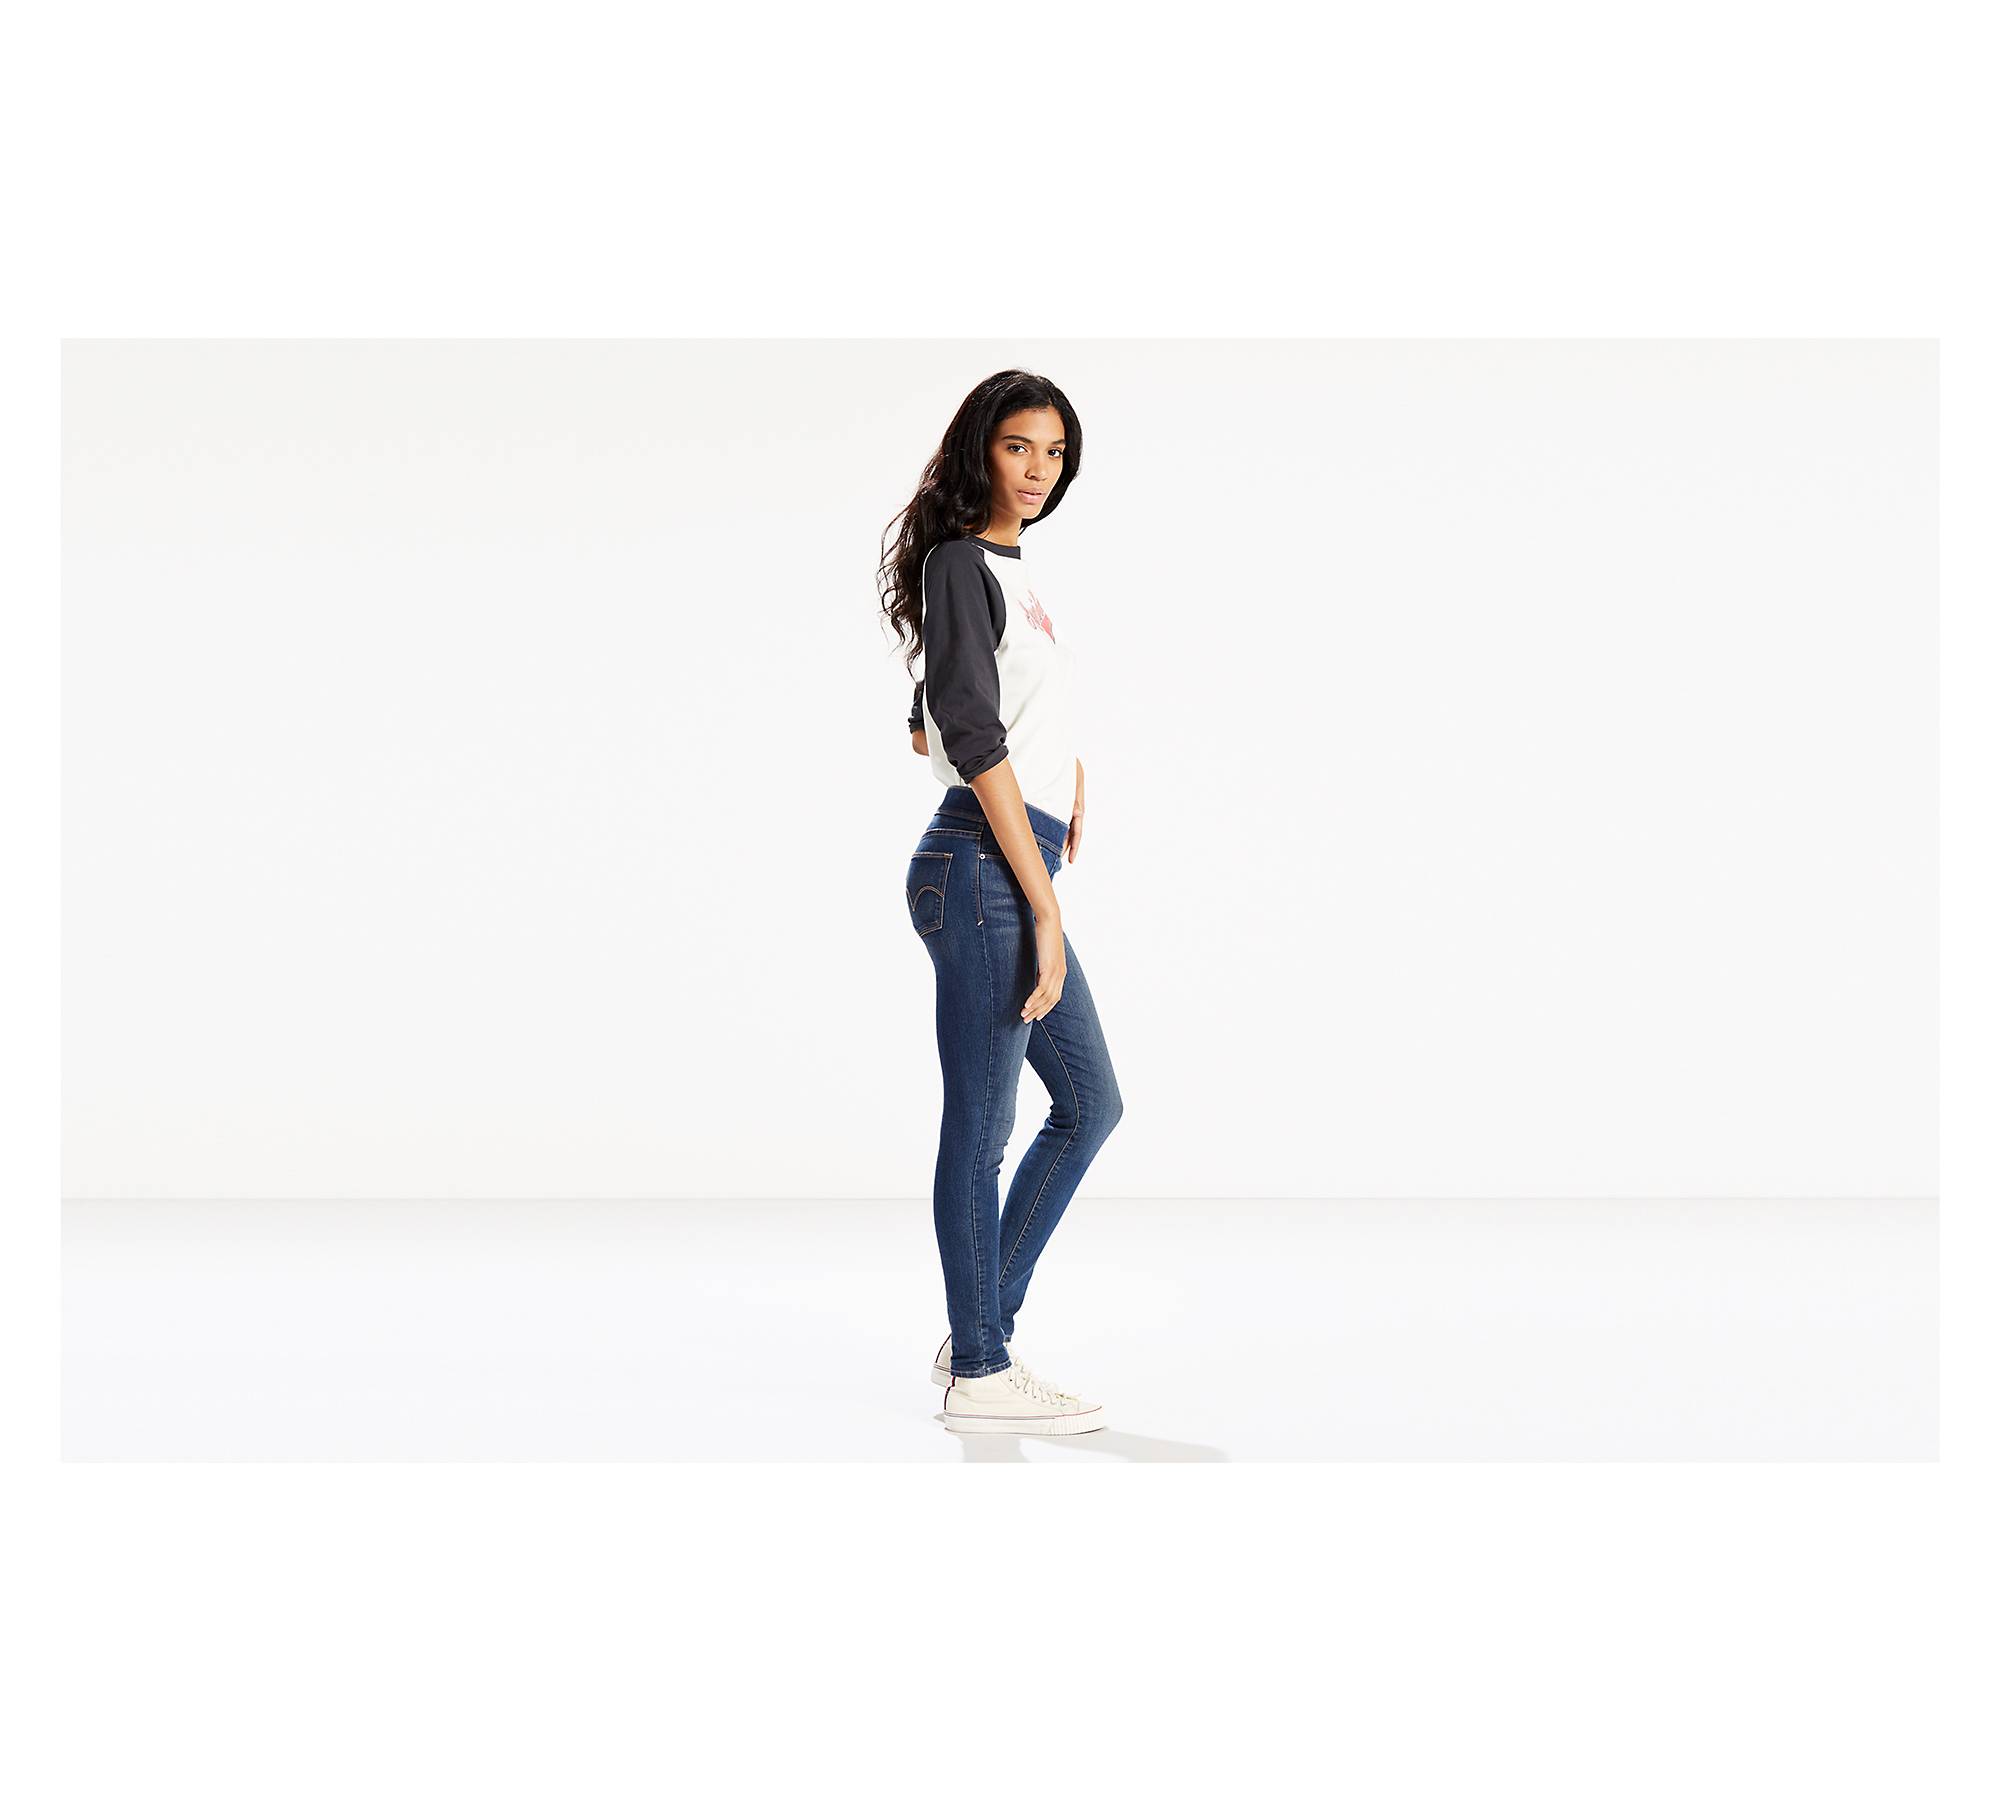 Pull On Skinny Jeans (plus Size) - Medium Wash | Levi's® US